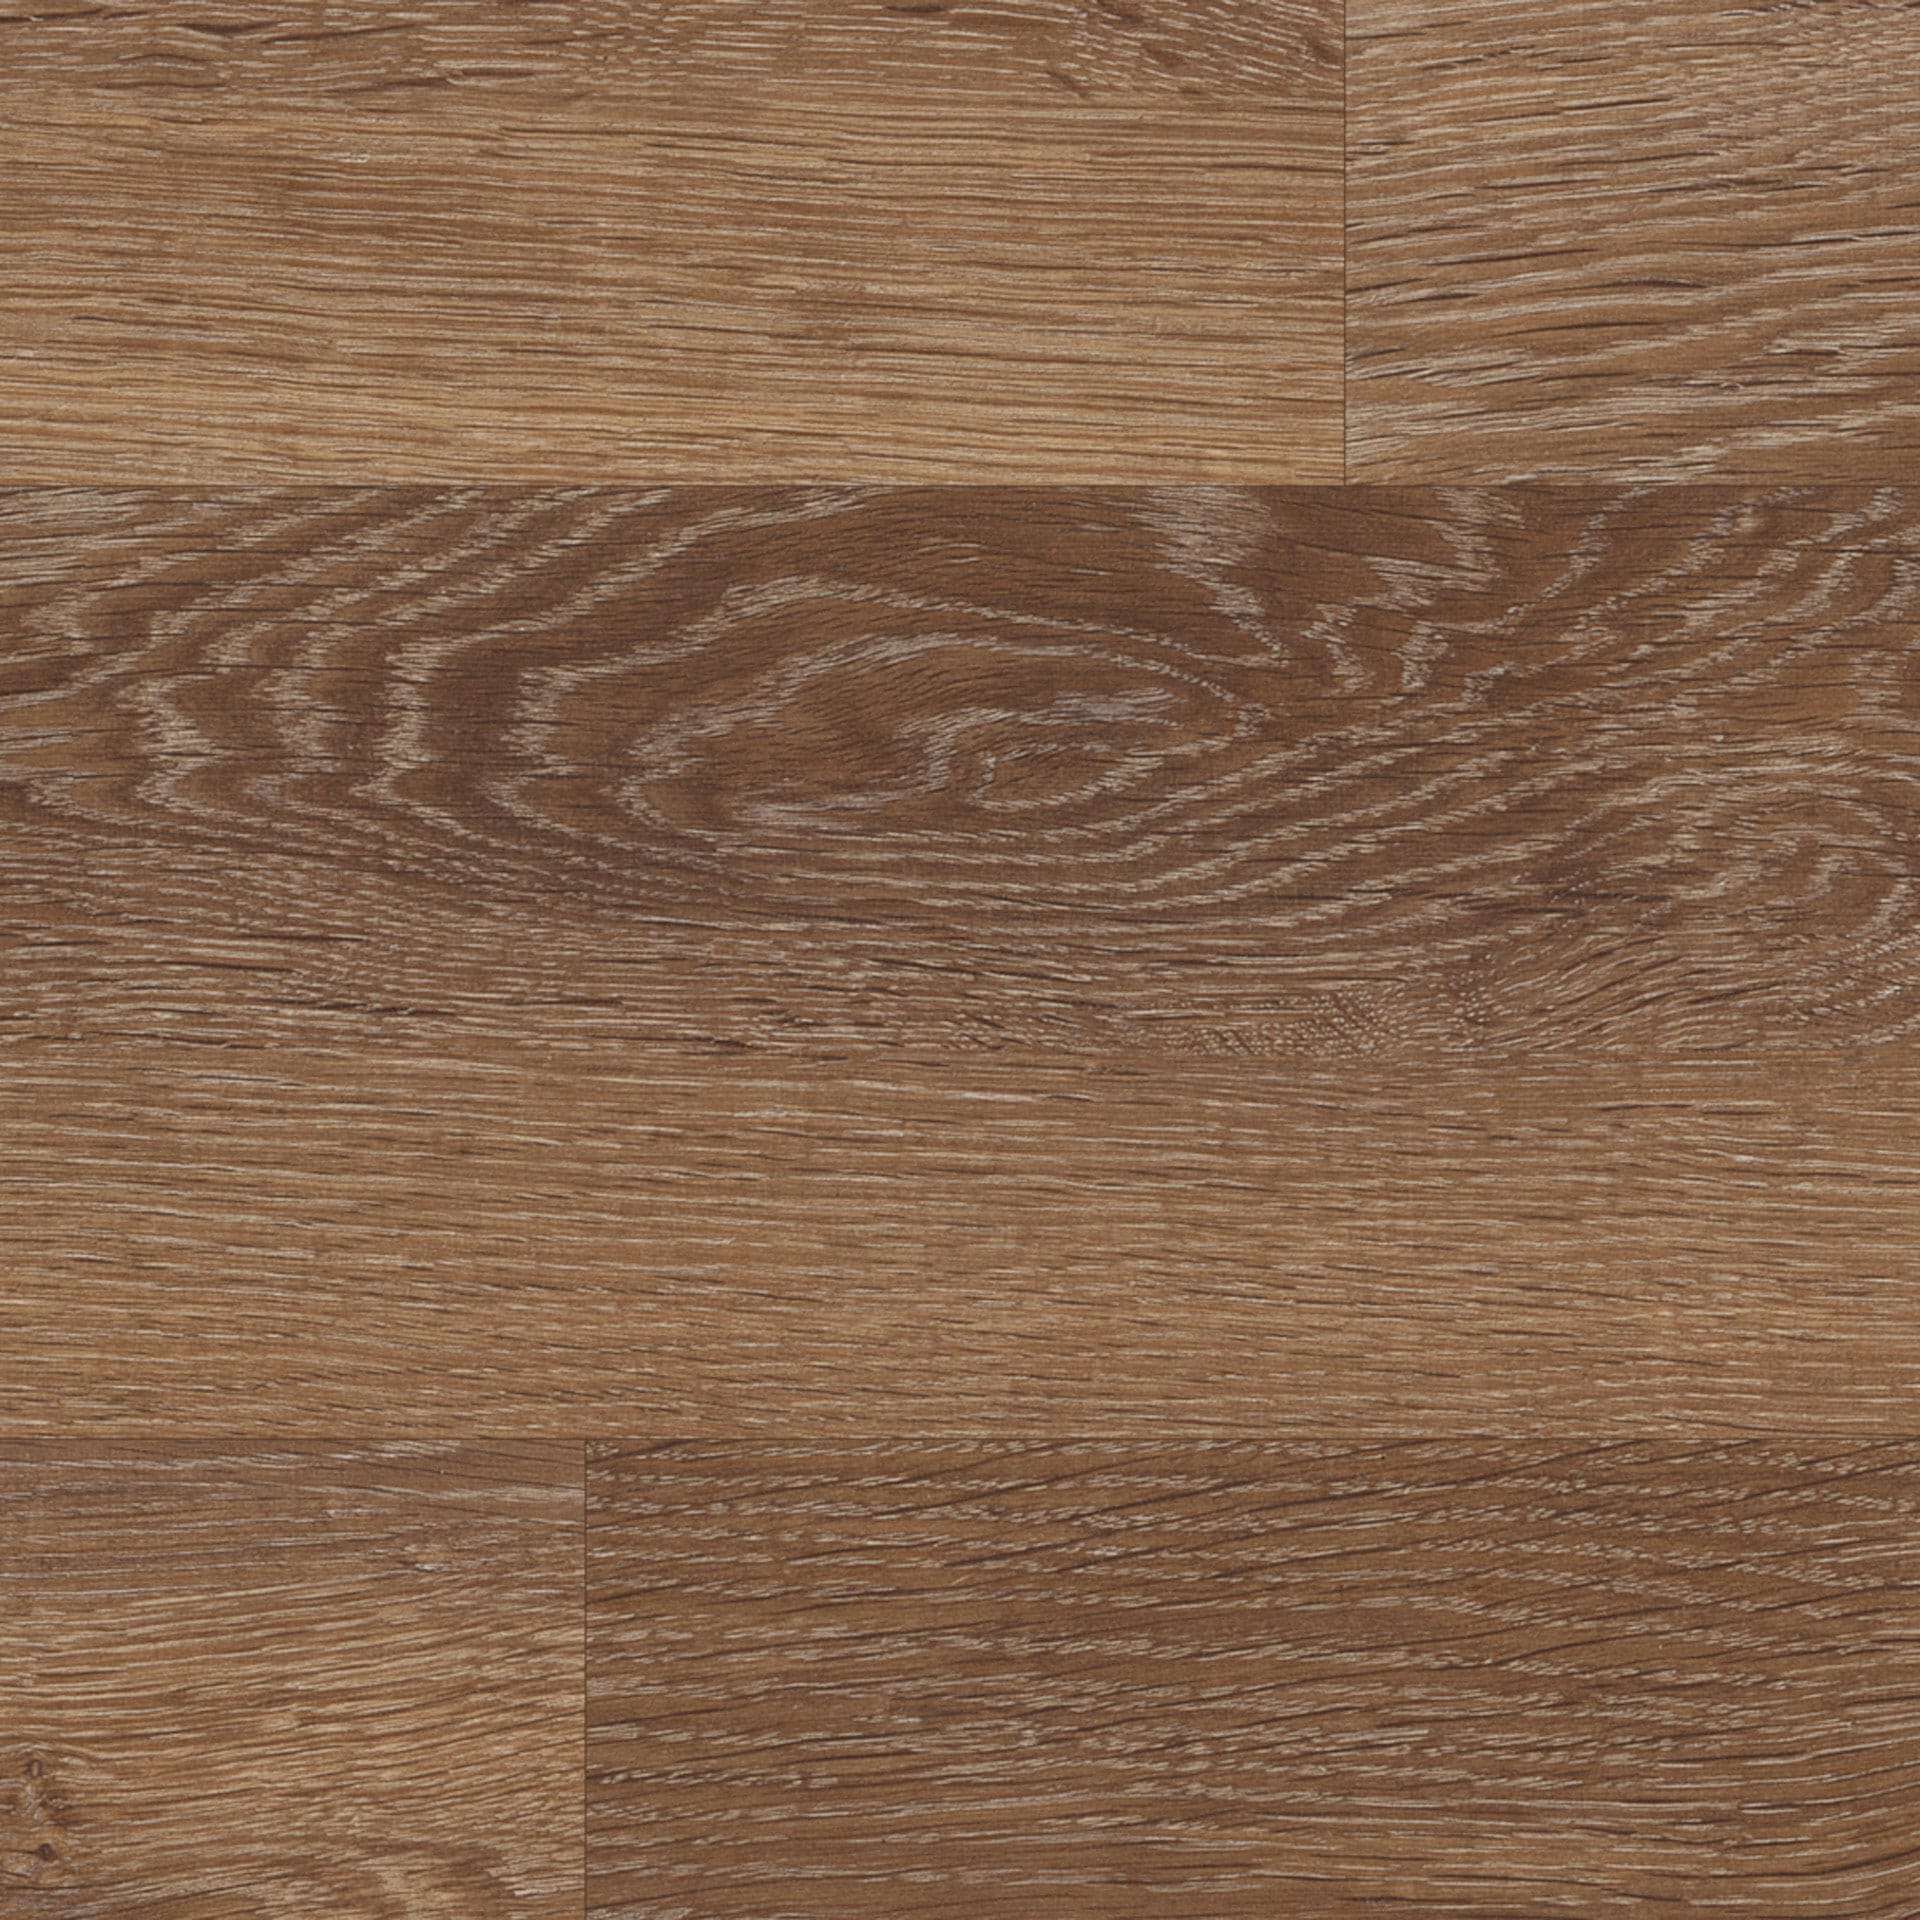 View of KP96 Mid Limed Oak luxury vinyl tile by Karndean